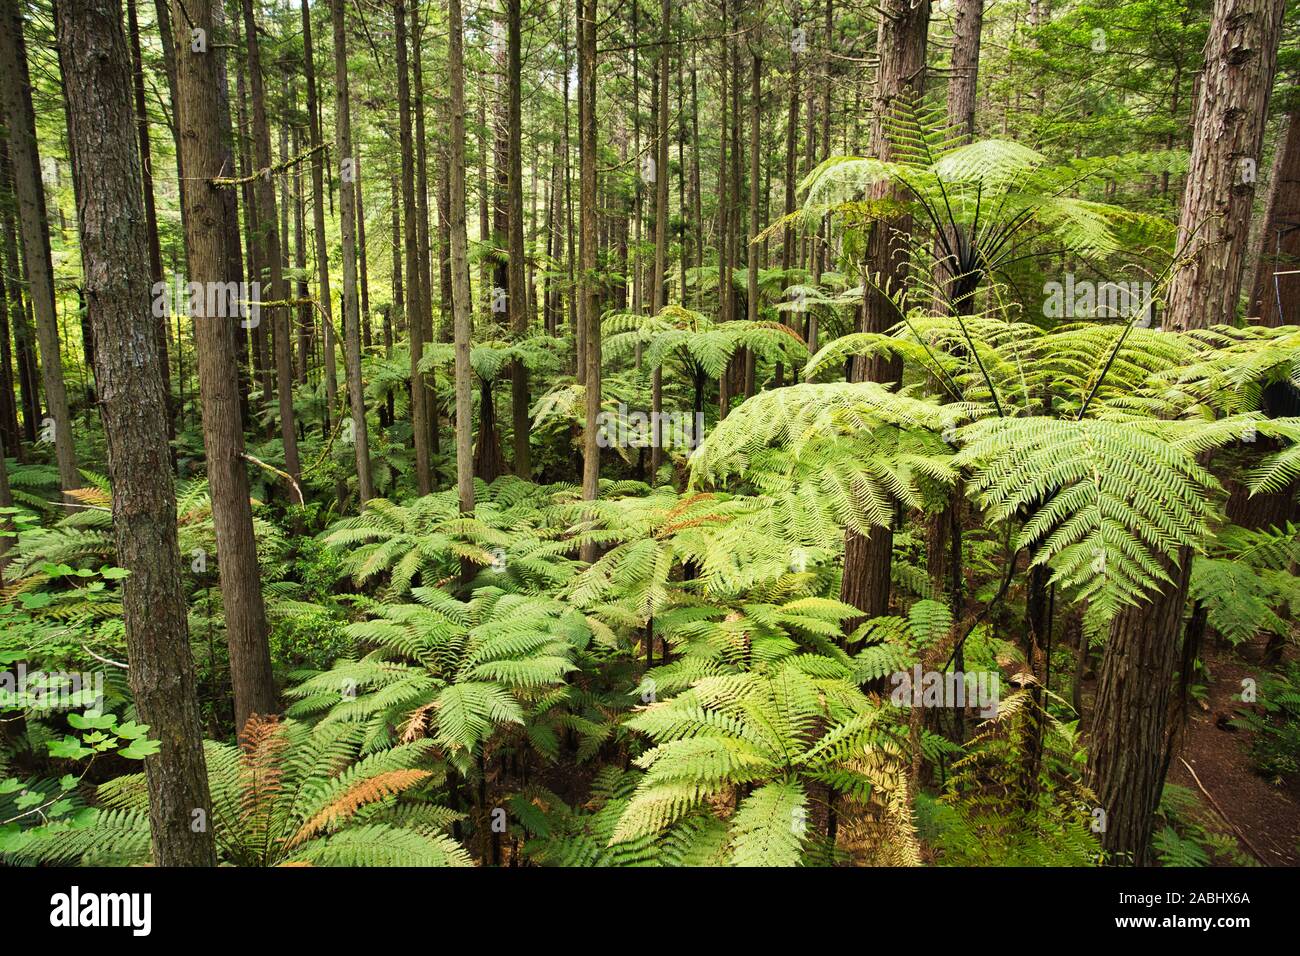 Forêt de fougères arborescentes et de séquoias géants dans la forêt de Whakarewarewa près de Rotorua, Nouvelle-Zélande Banque D'Images